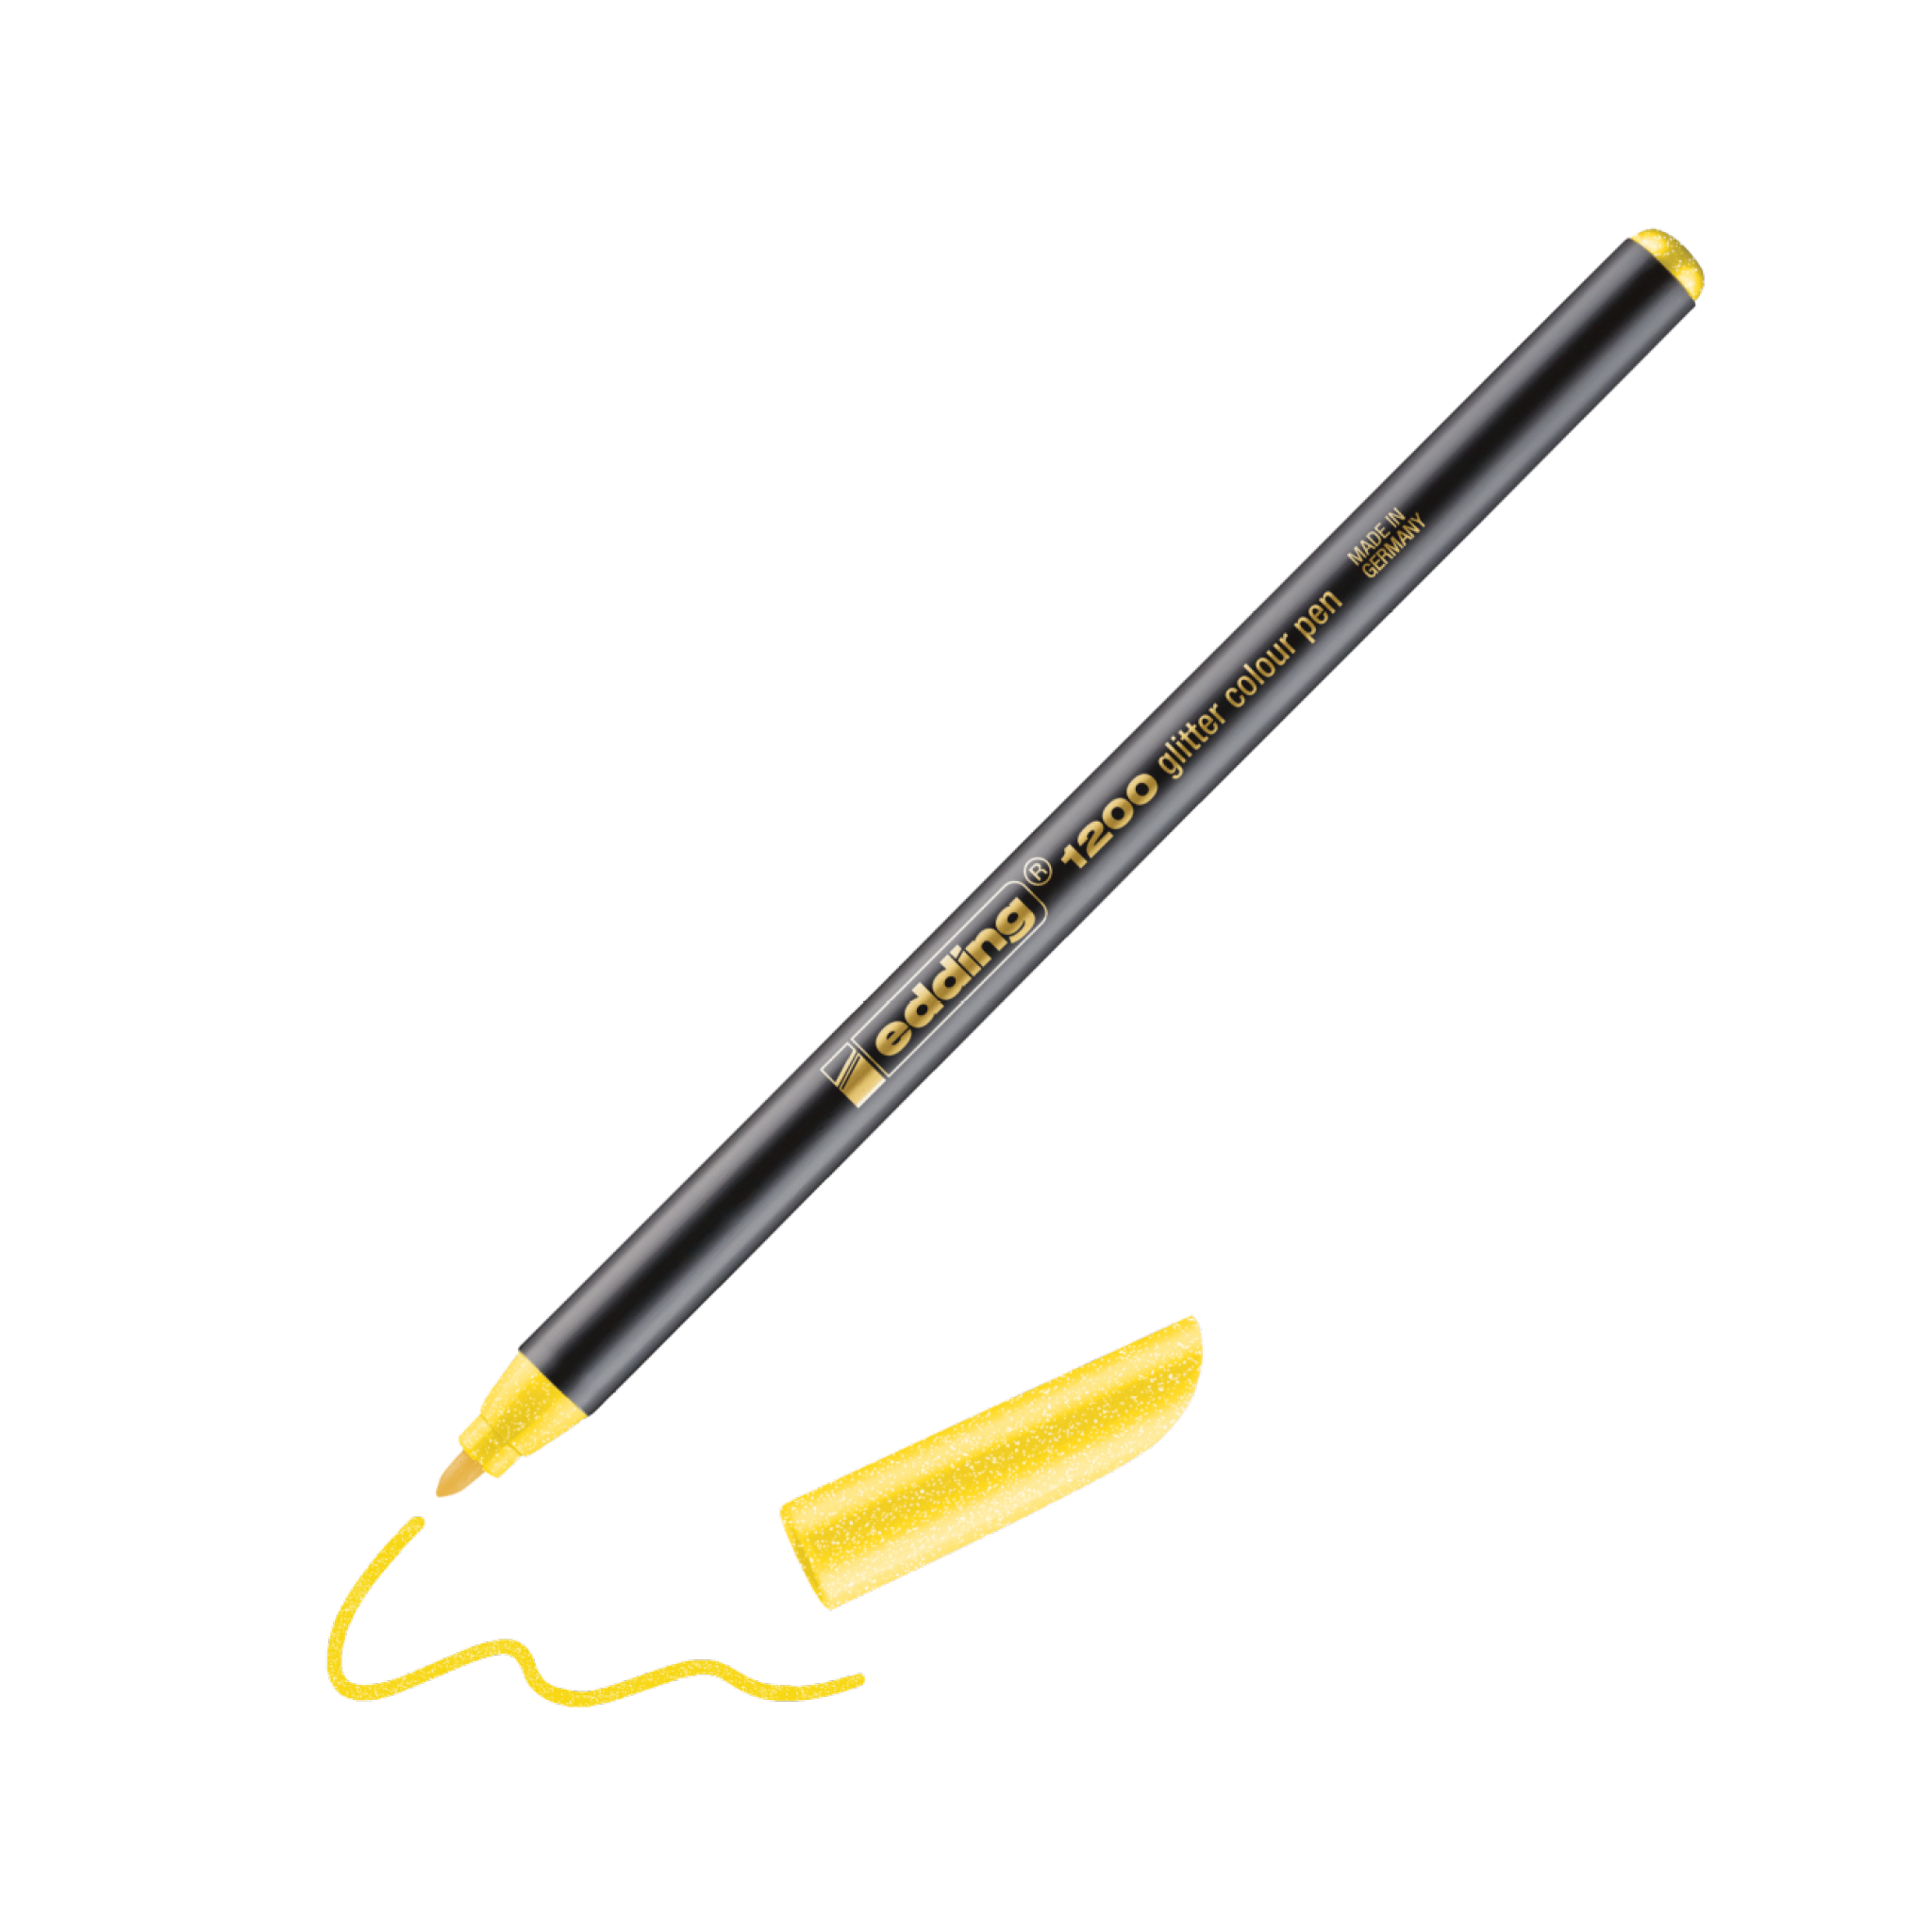 Ein schwarz-goldener edding 1200 Glitzer Fasermaler ohne Kappe, der eine wellenförmige gelbe Linie auf weißem Hintergrund zeichnet. Der Text auf dem Stift lautet „Gelly Roll 08“, perfekt zum Aufwerten jedes K